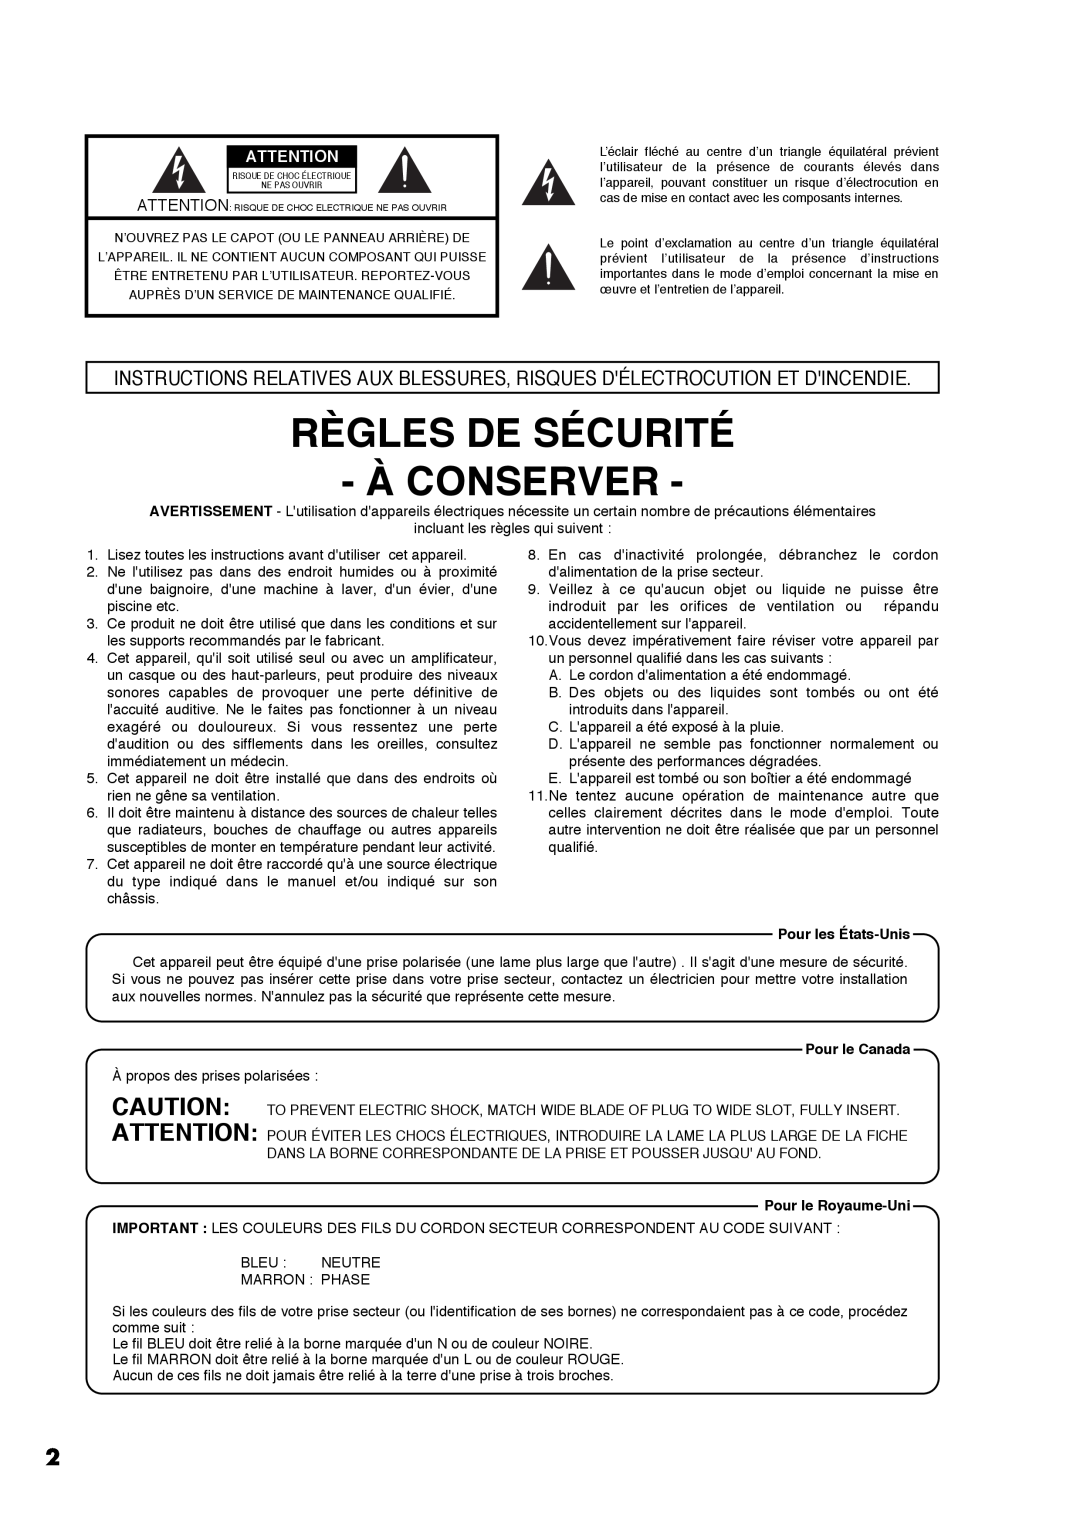 Roland AT30R manual Règles De Sécurité À Conserver, Pour les États-Unis, Pour le Canada, Pour le Royaume-Uni 